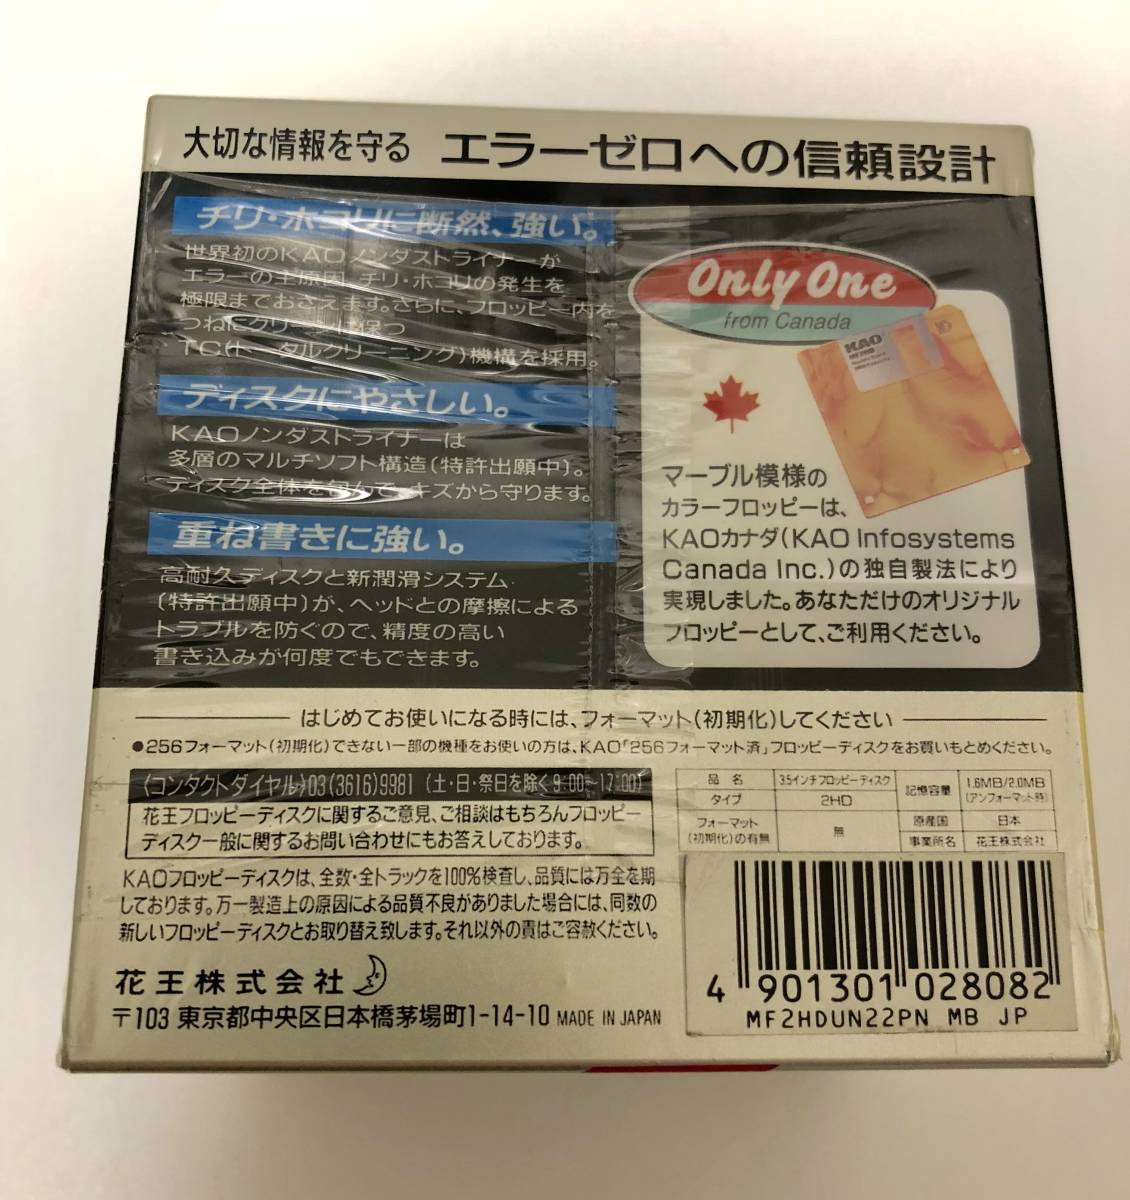 未使用品 KAO 花王 3.5インチ 2HD フロッピーディスク 限定品 マーブル模様フロッピー付 22枚セット 日本製